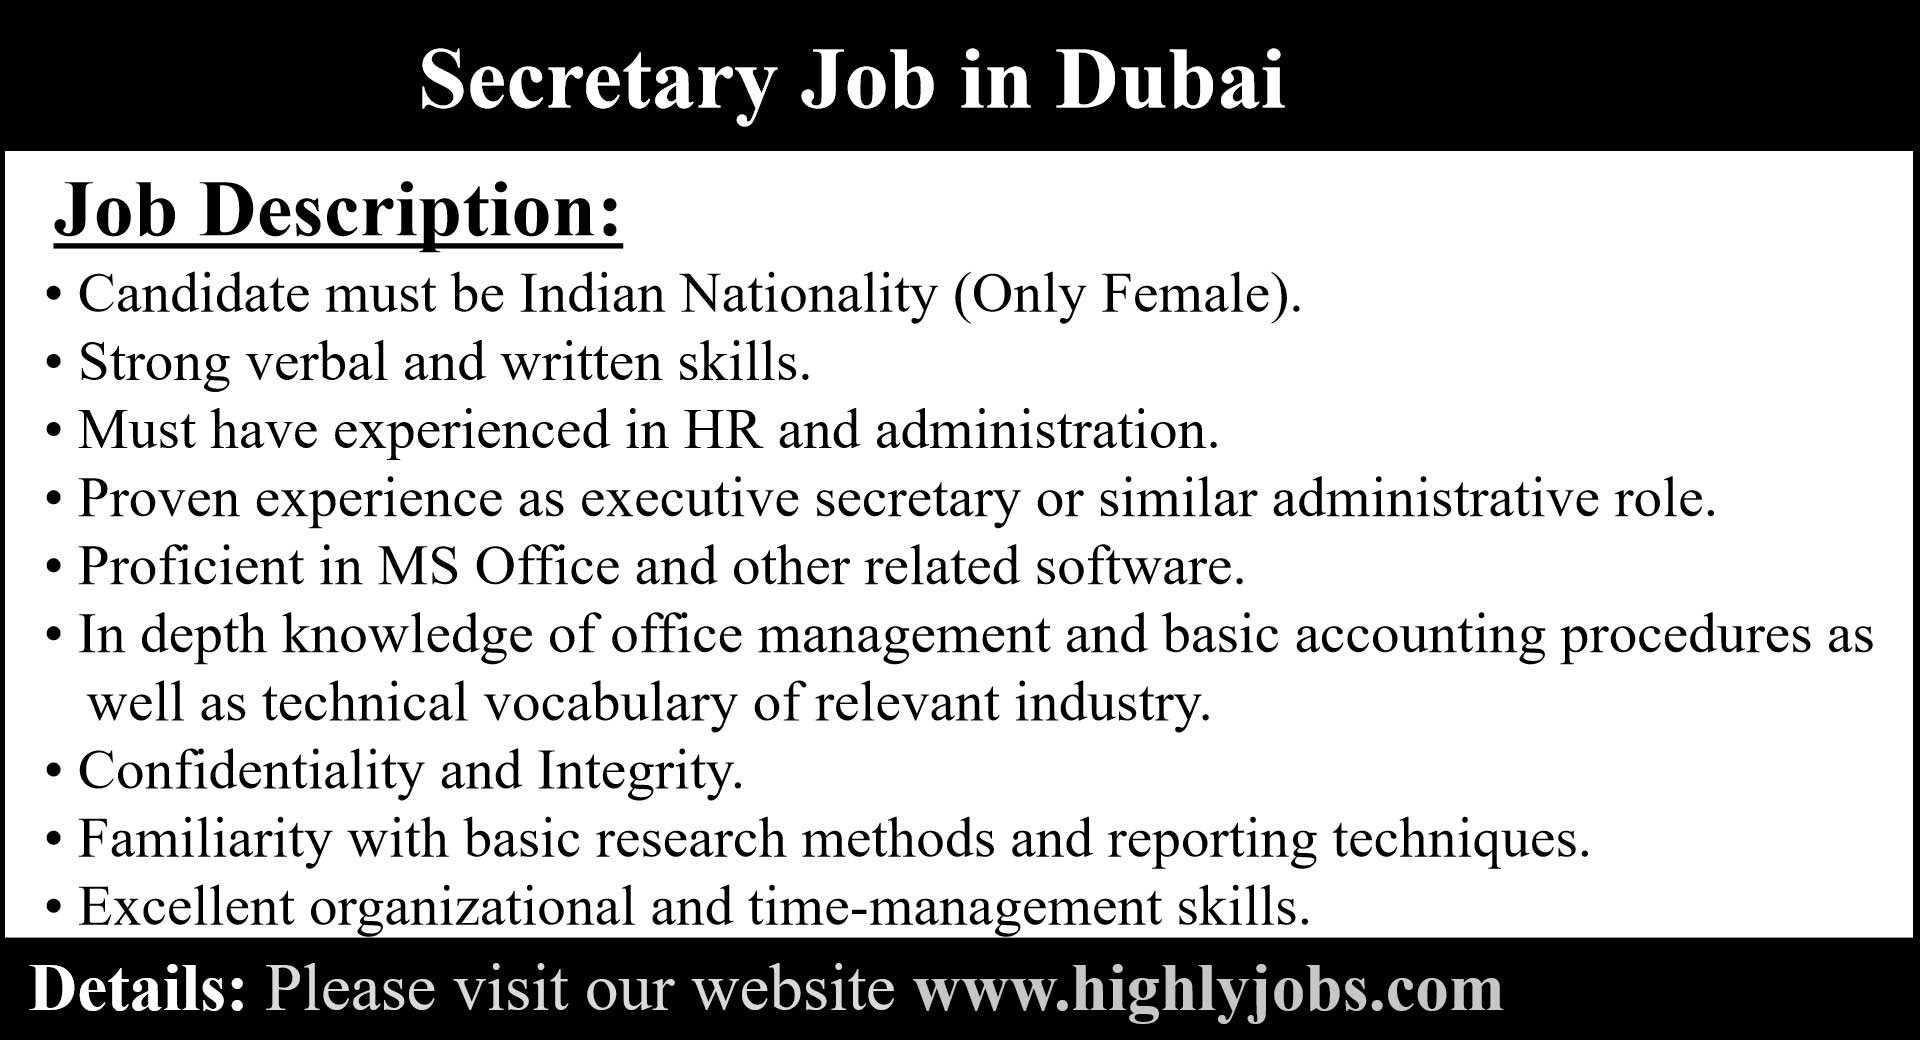 Secretary Job in Dubai, United Arab Emirates